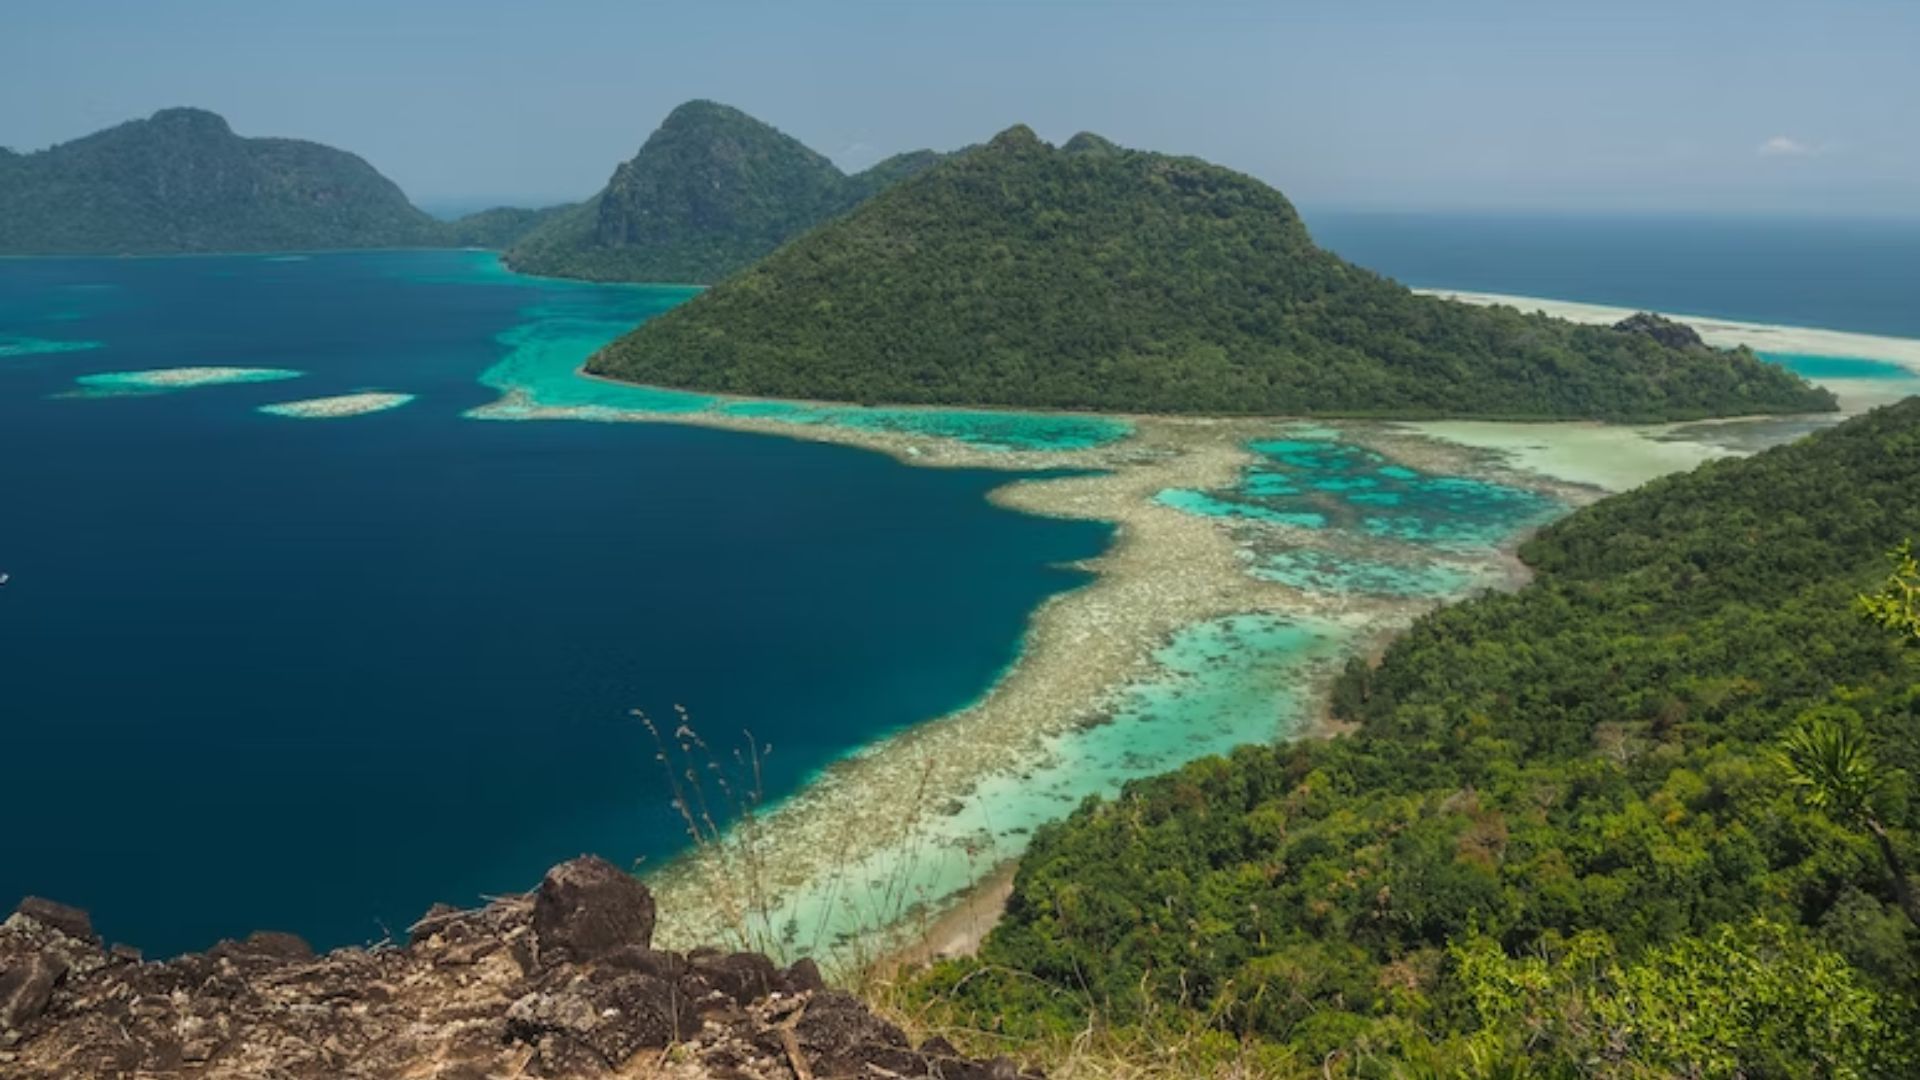 Borneo Island most beautiful destinations in Asia